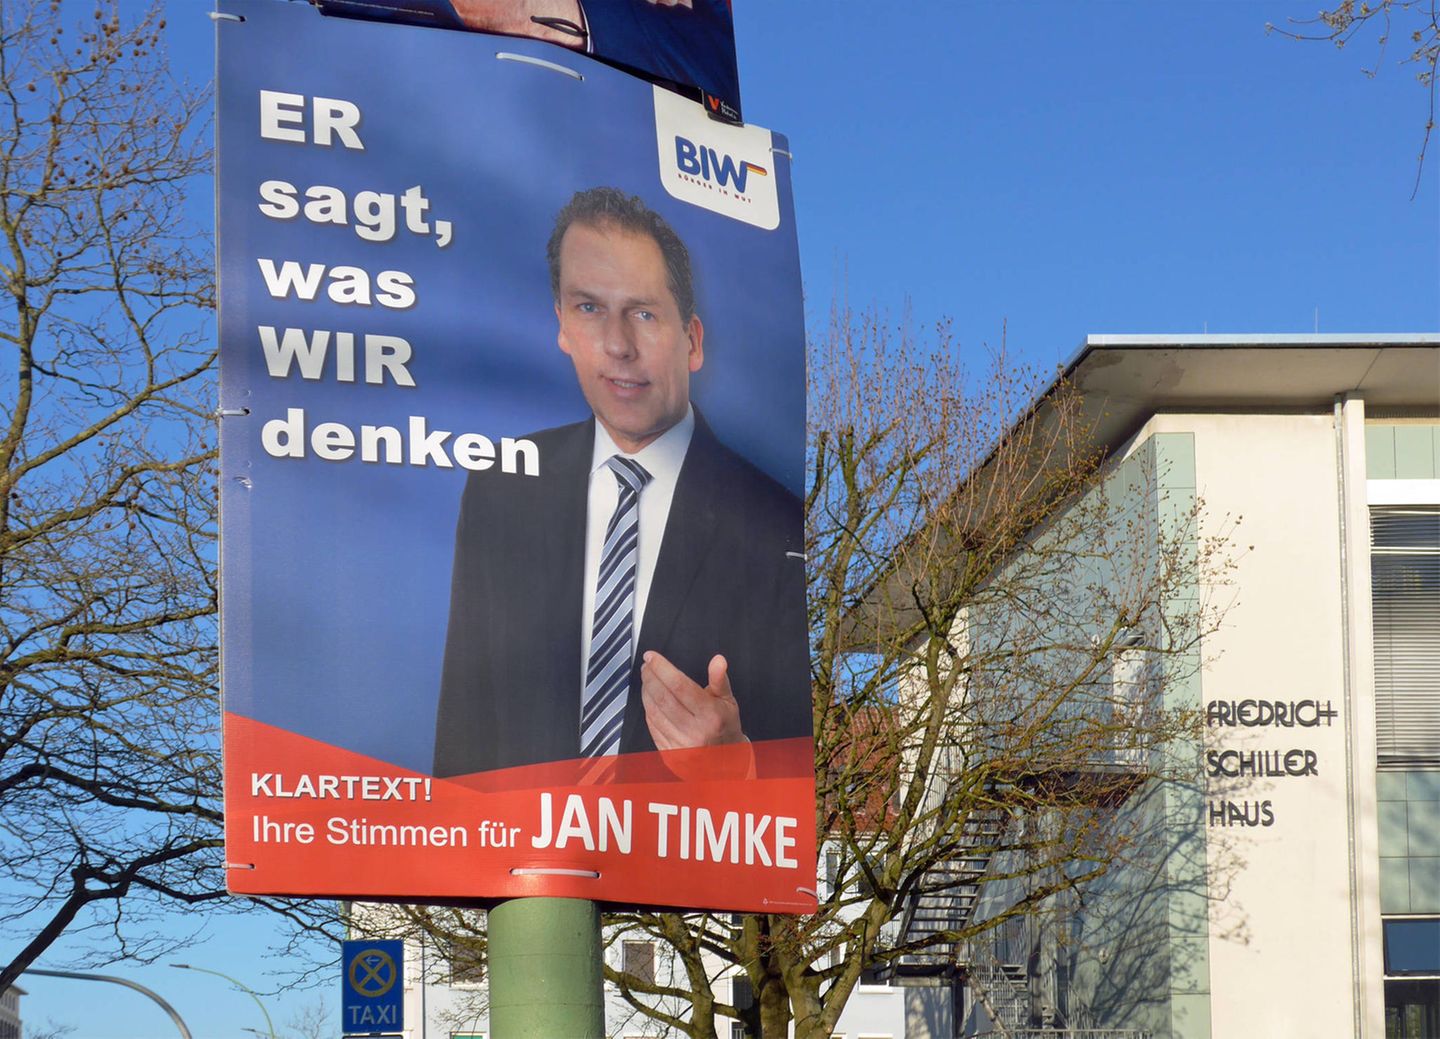 Die "Bürger in Wut" mit Gründer und Parteivorsitzendem Jan Timke versprachen im Bremer Bürgerschaftswahlkampf Klartext